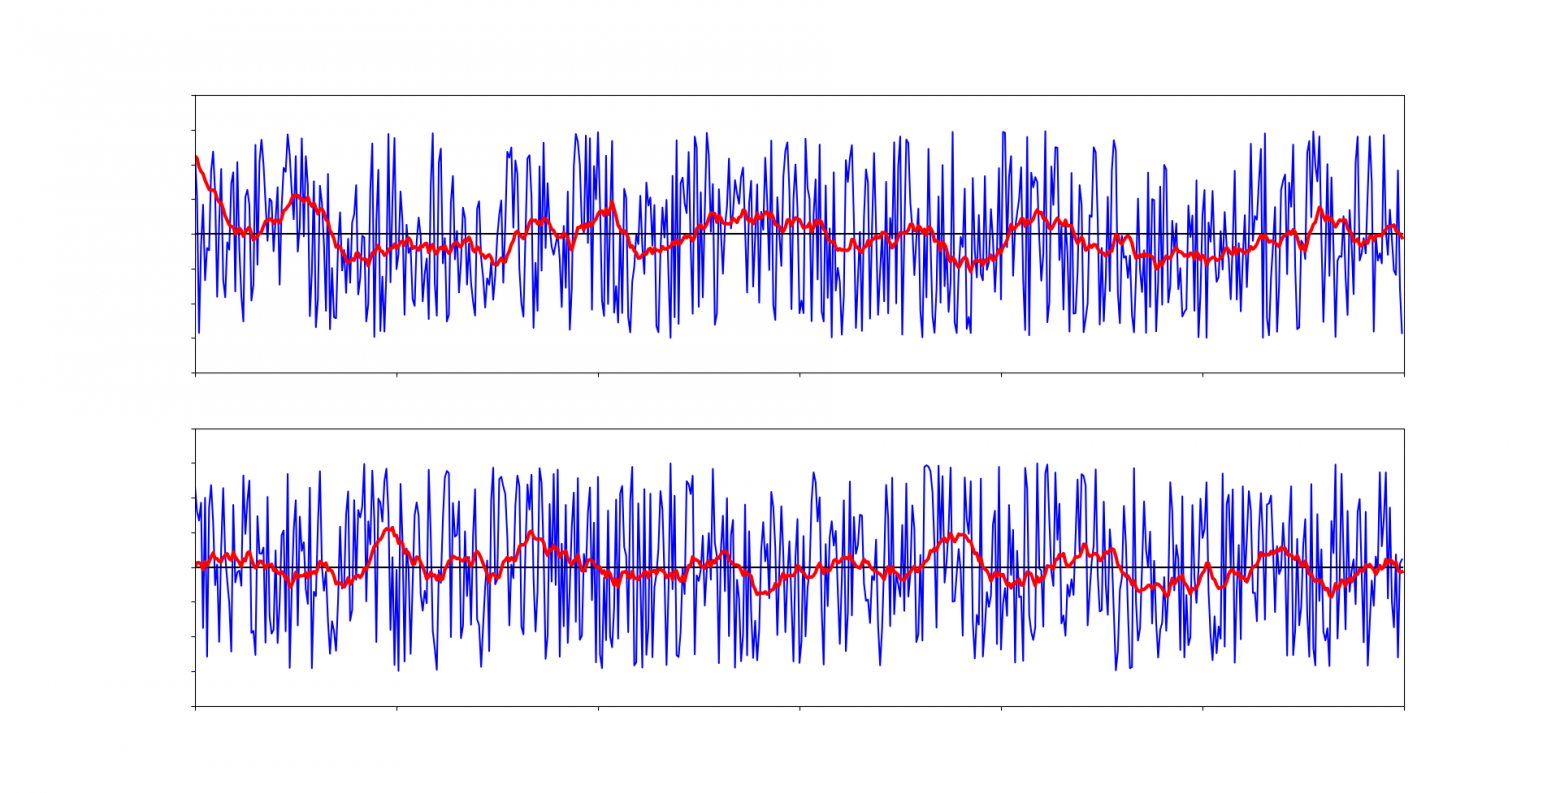 просто линейный шум, нормализованный средним арифметическим с буфером в 20